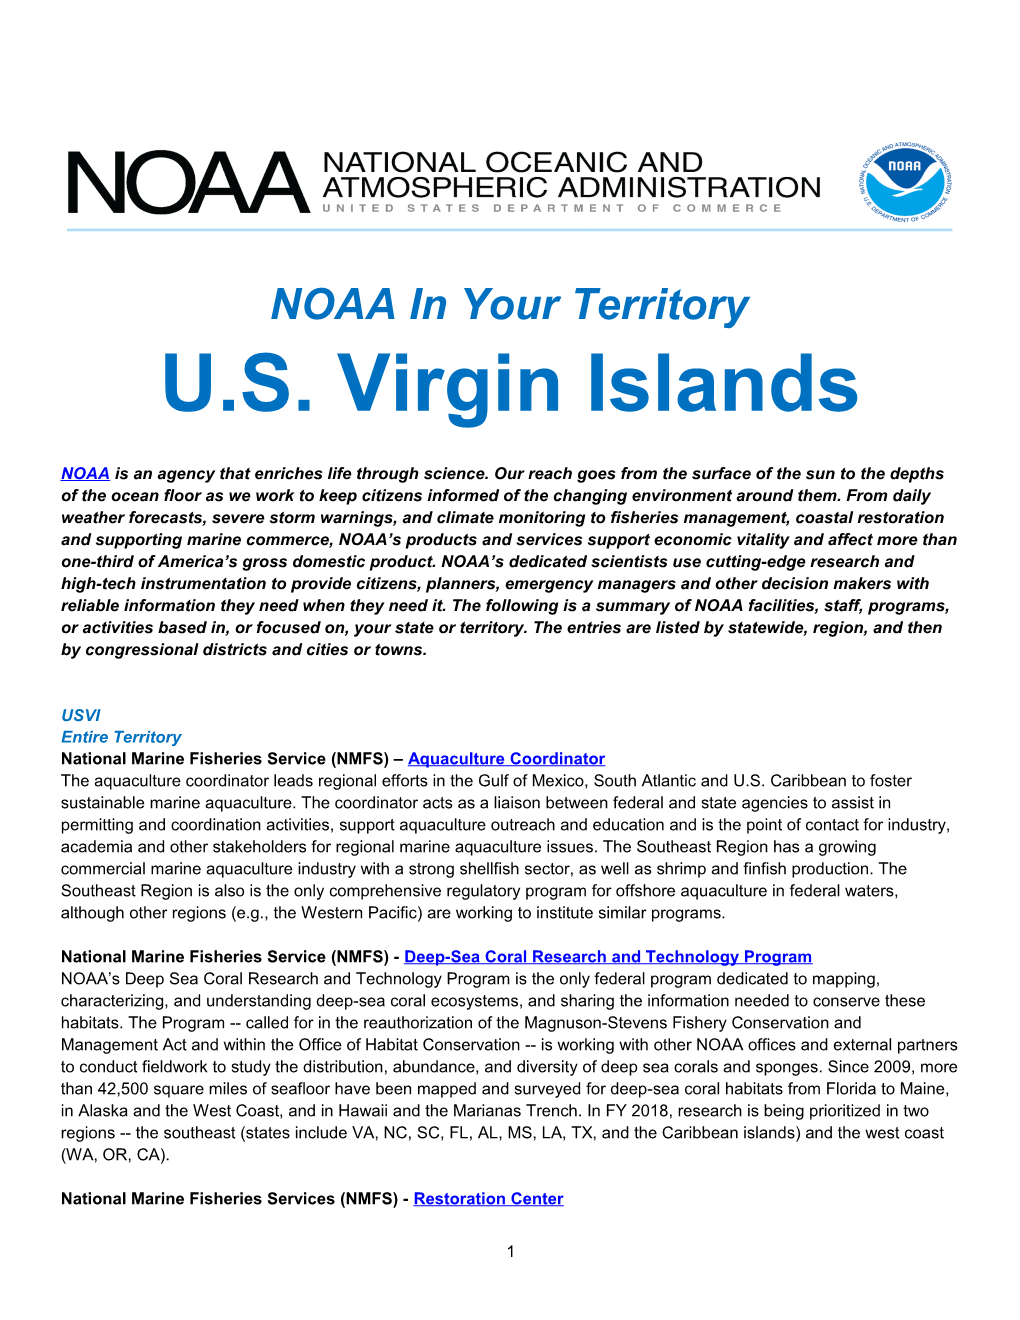 NOAA in Your State - U.S. Virgin Islands